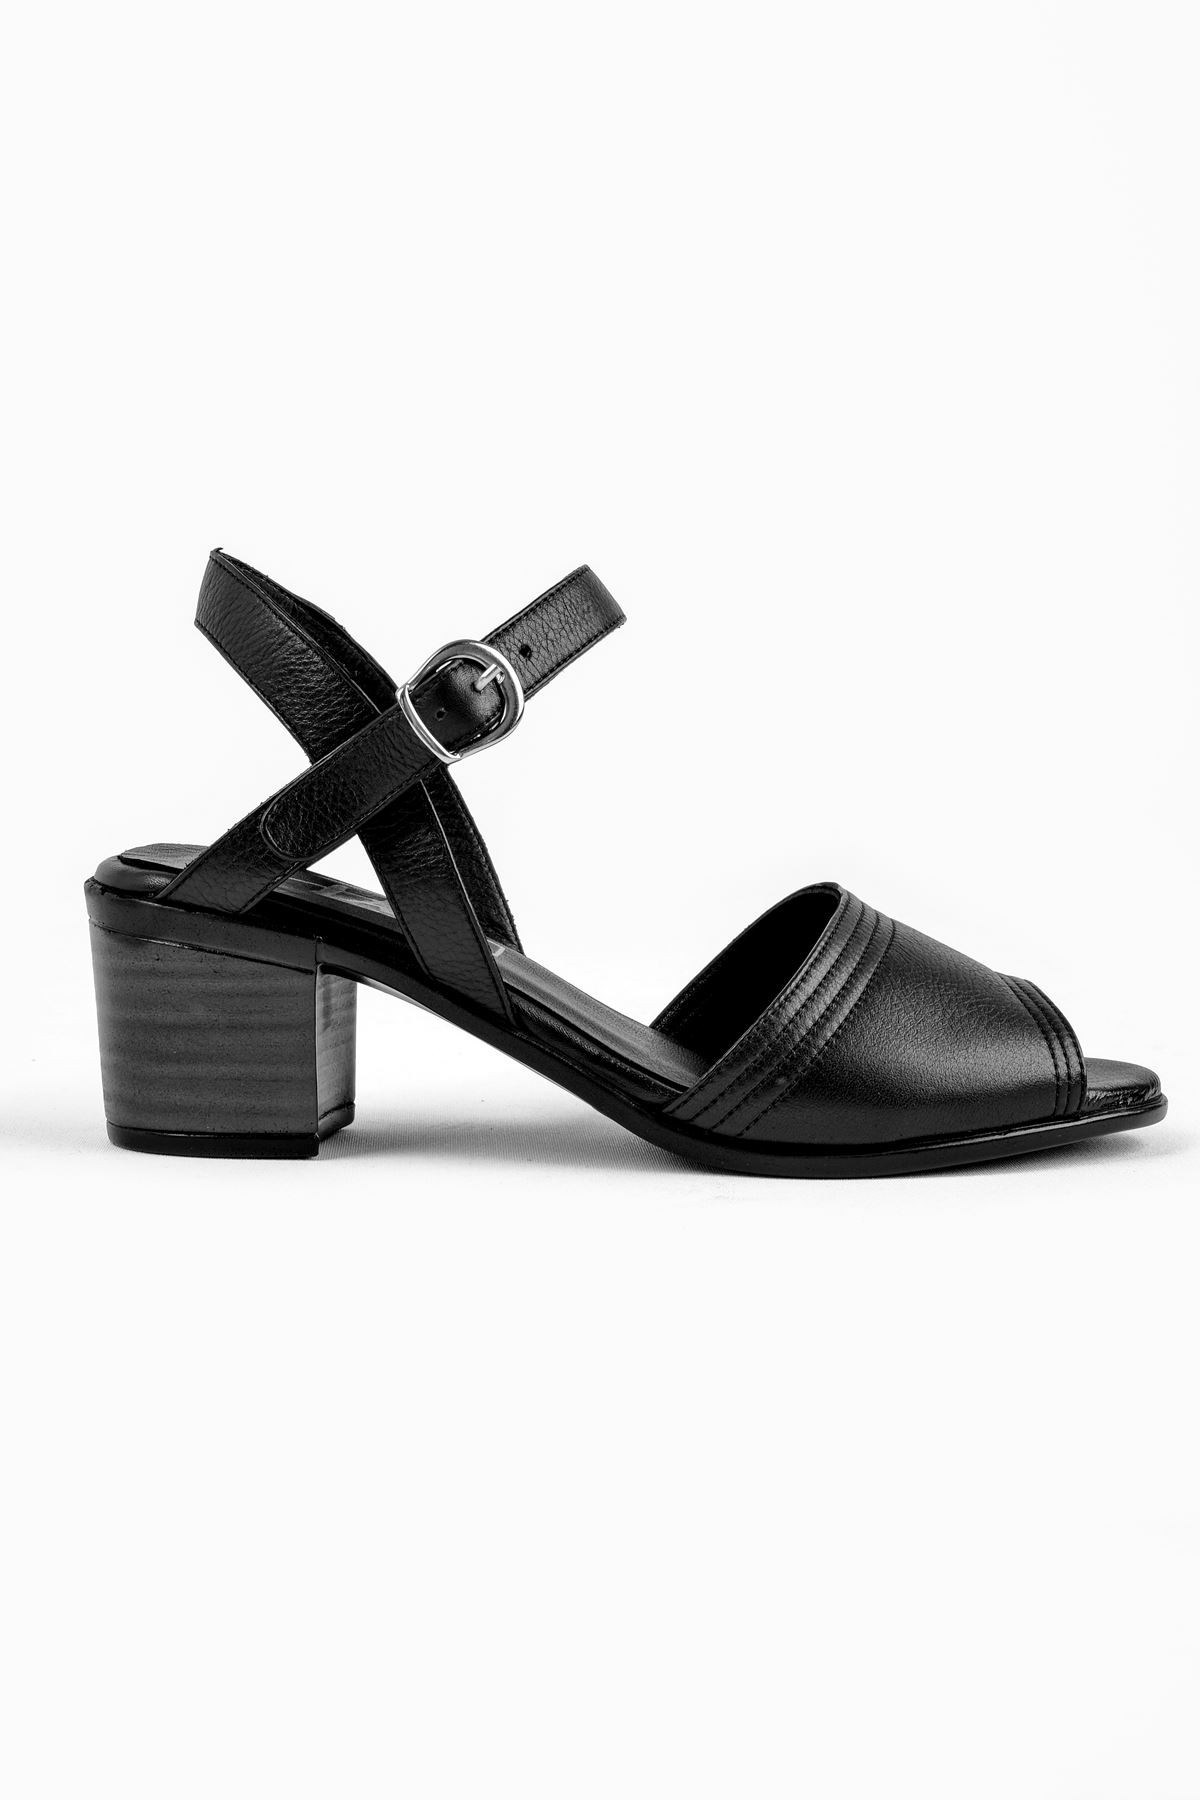 Jolıe Hakiki Deri Tek Bantlı Kadın Topuklu Ayakkabı (B2186 ) - Siyah